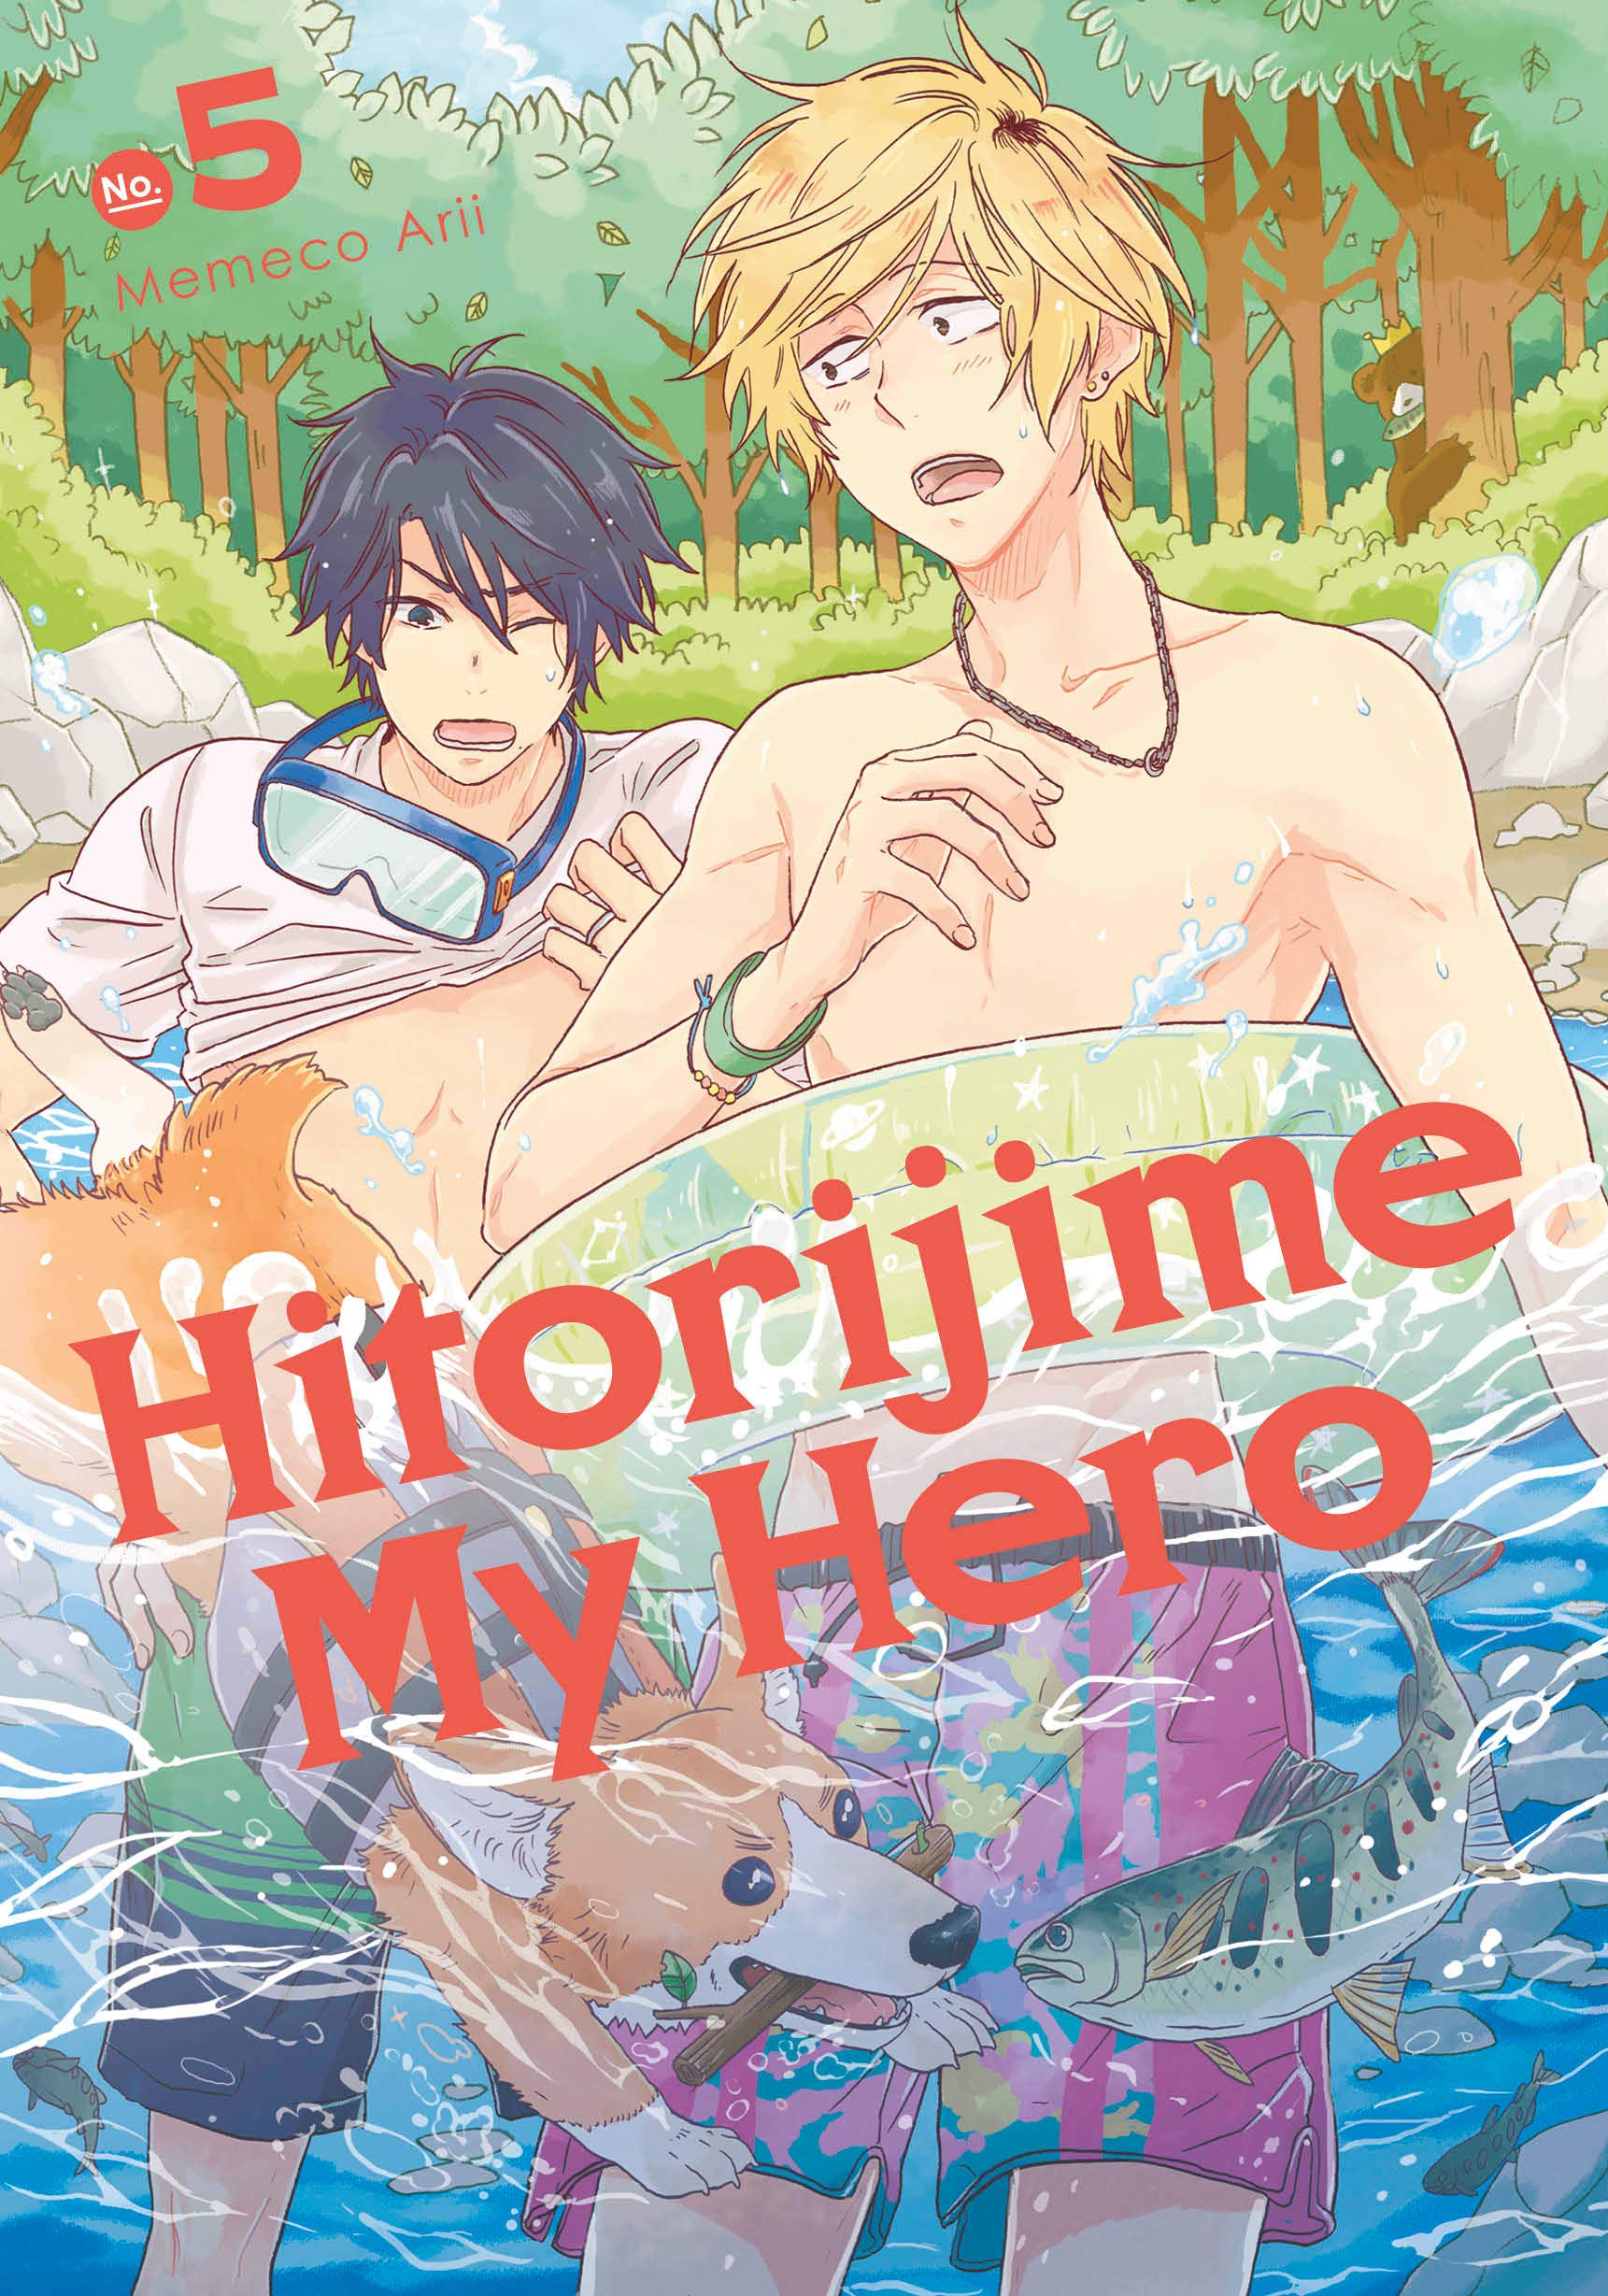 Hitorijime My Hero - Volume 5 | Memeco Arii